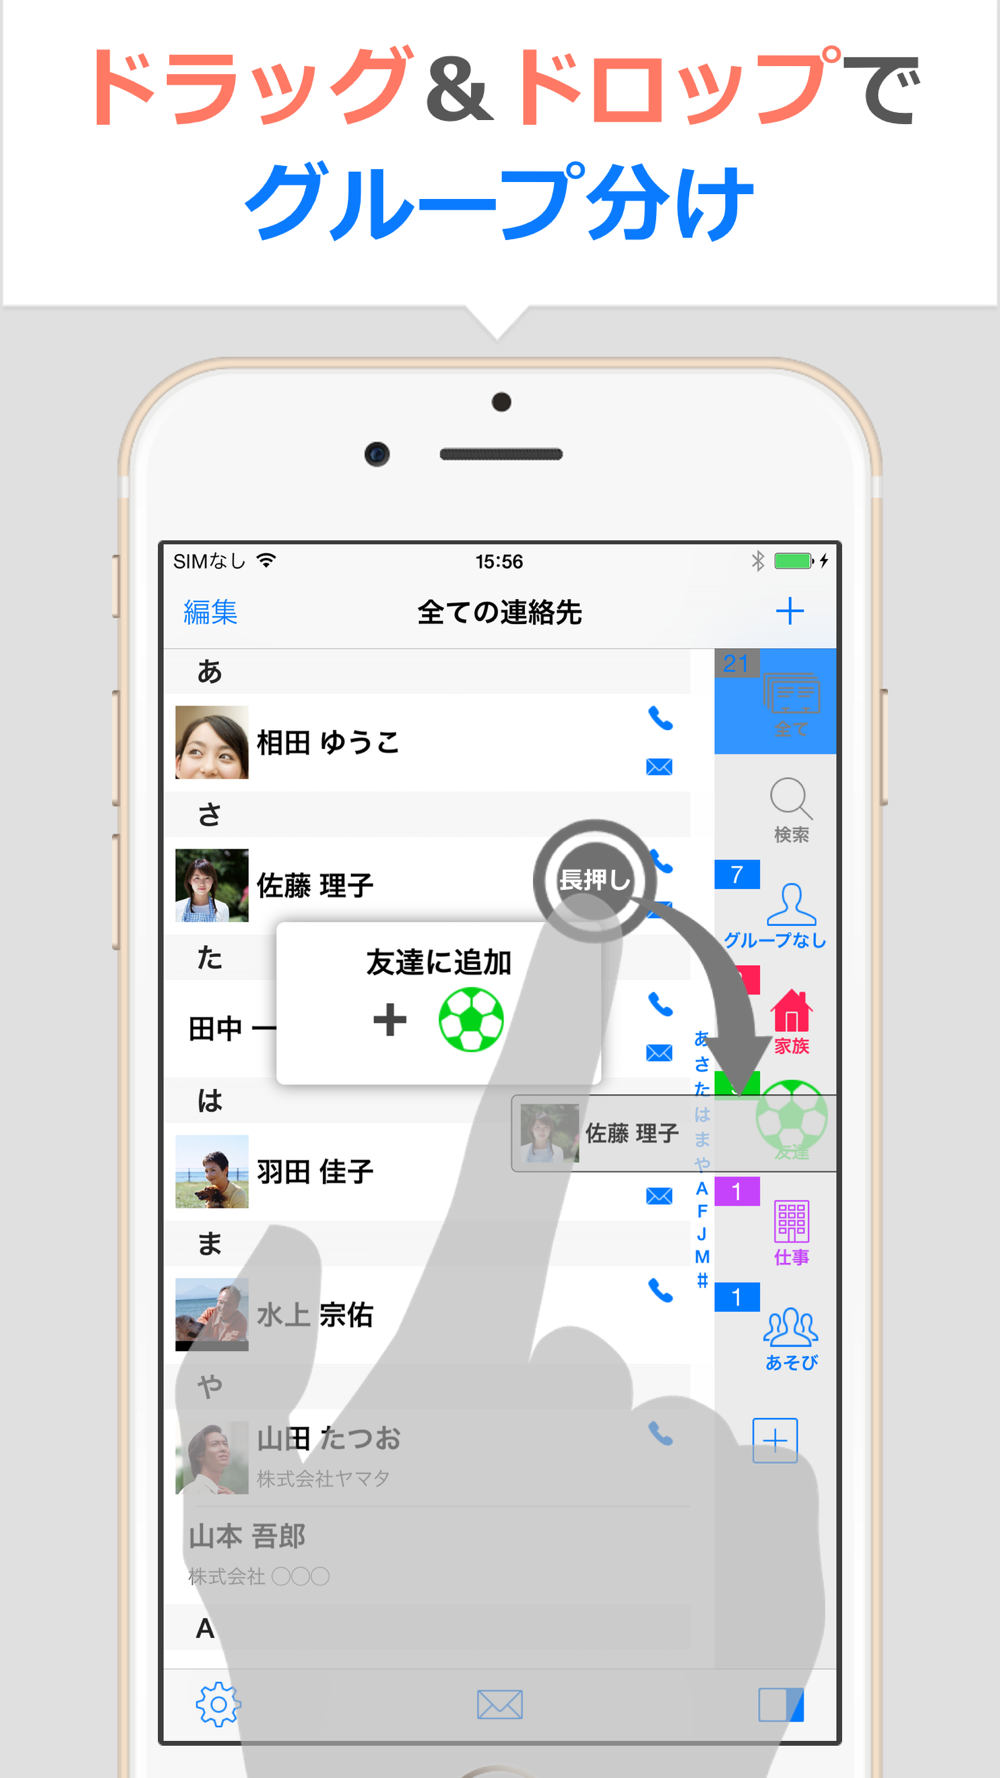 連絡先ss 連絡先のグループ分け Free Download App For Iphone Steprimo Com